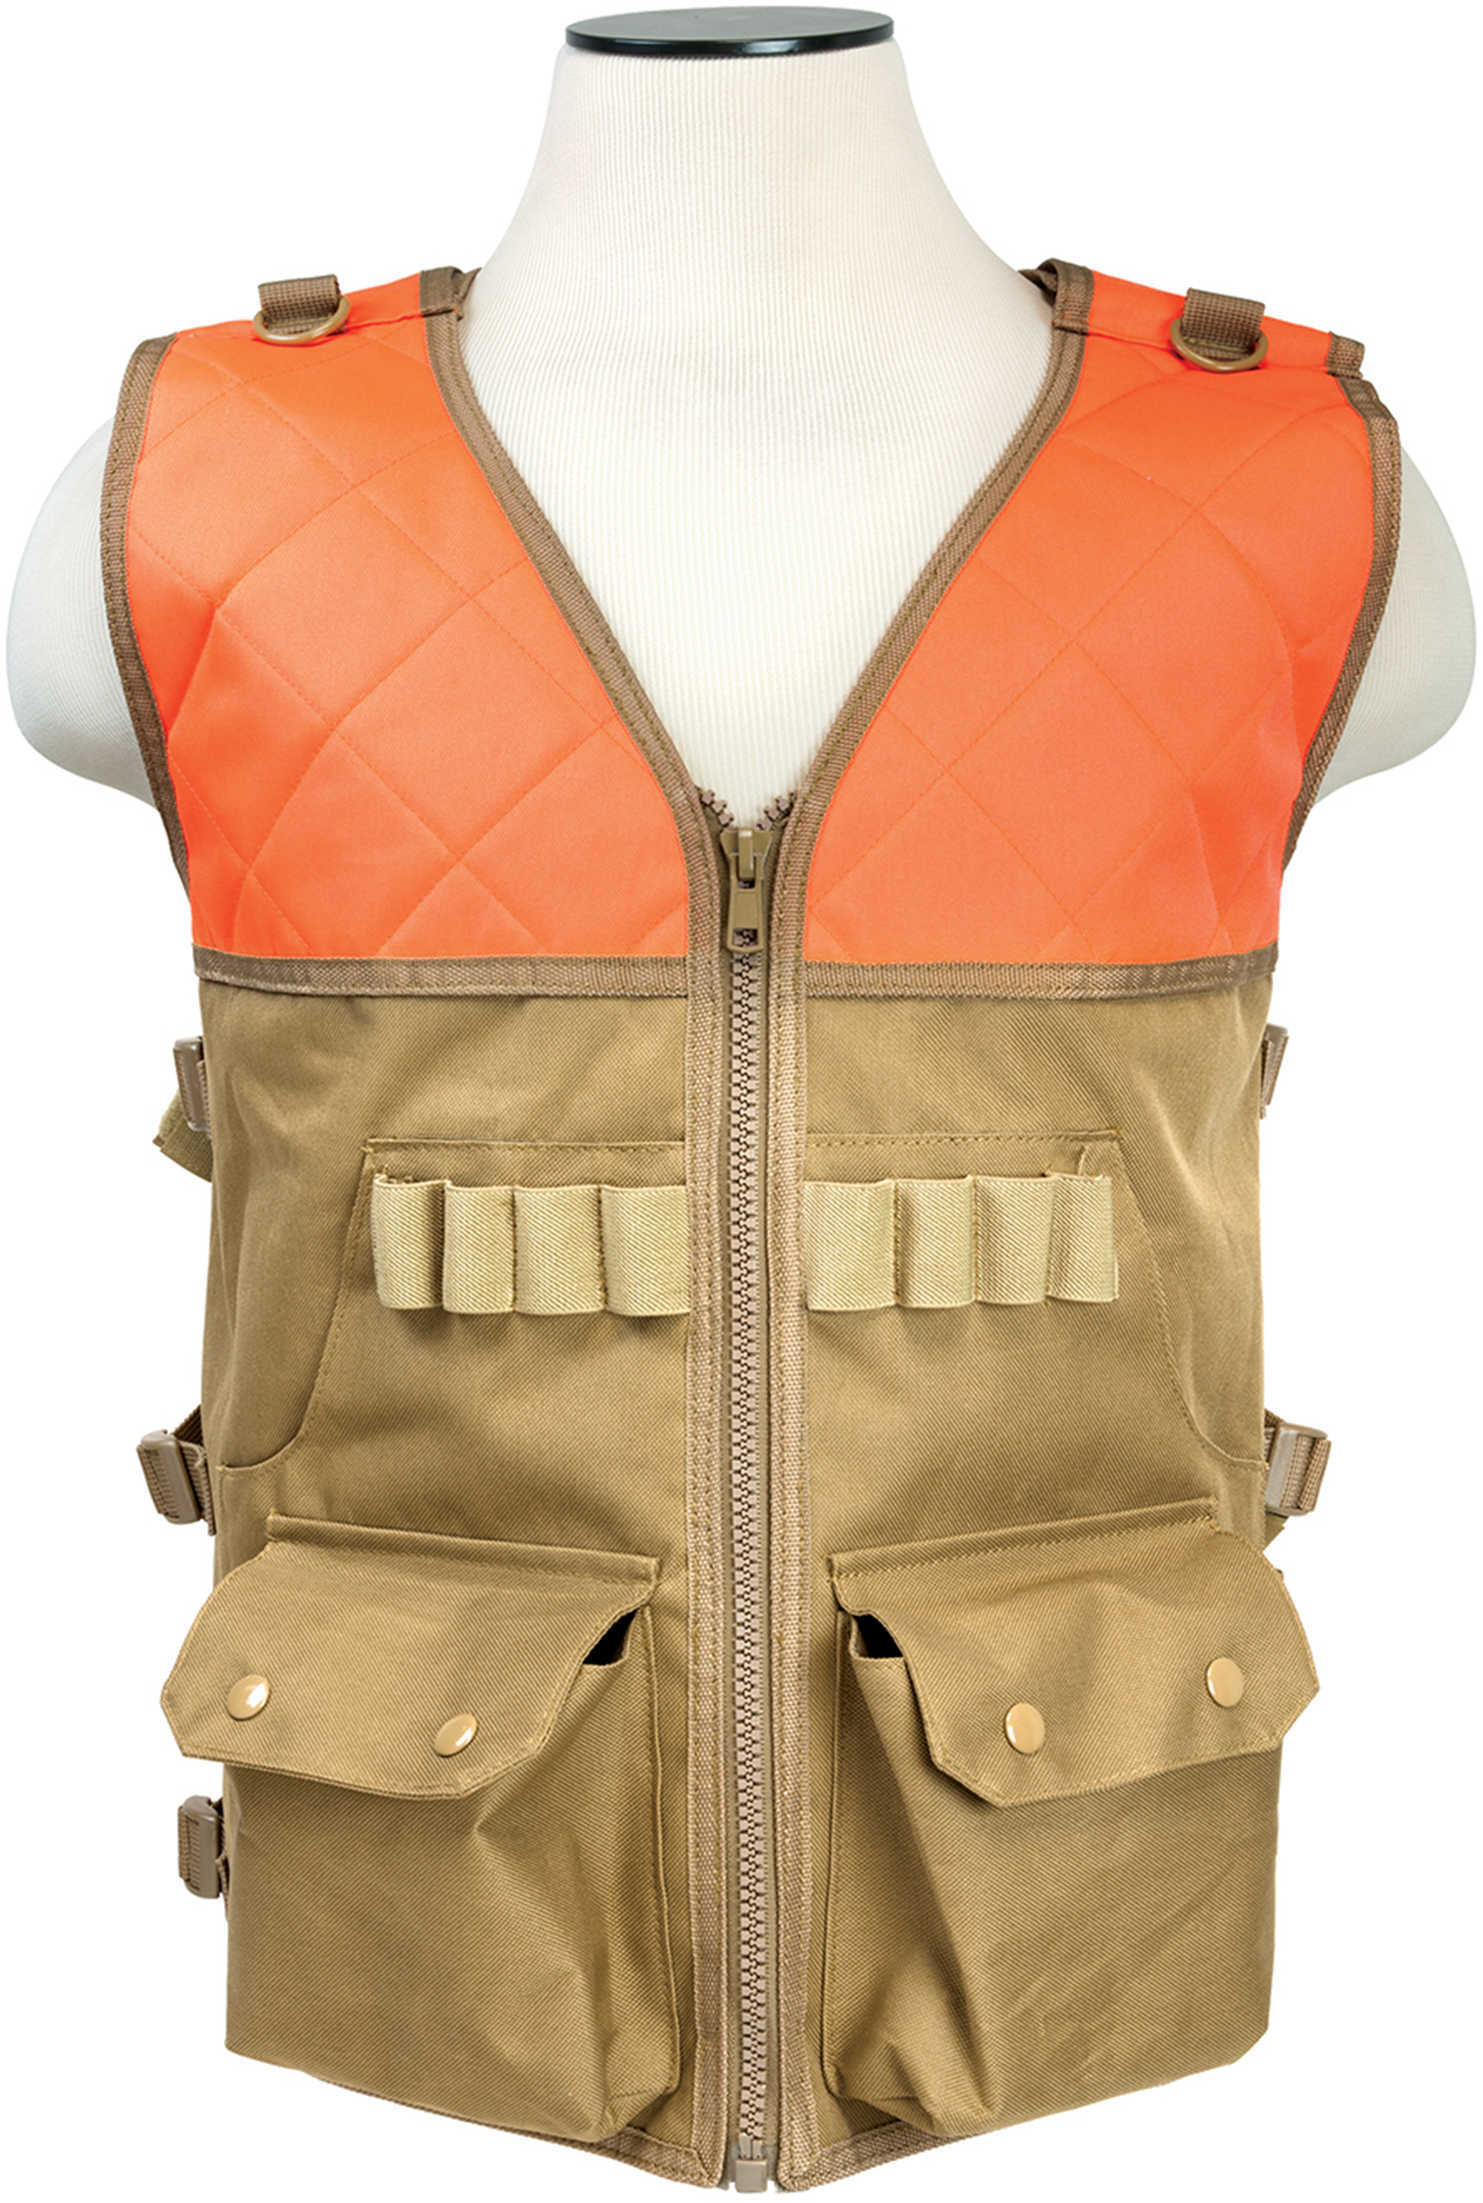 NCSTAR Hunting Vest Blaze Orange Shotshell Elastic Loops Large Game Pouch (2) Main Front Pockets Adjustable Side